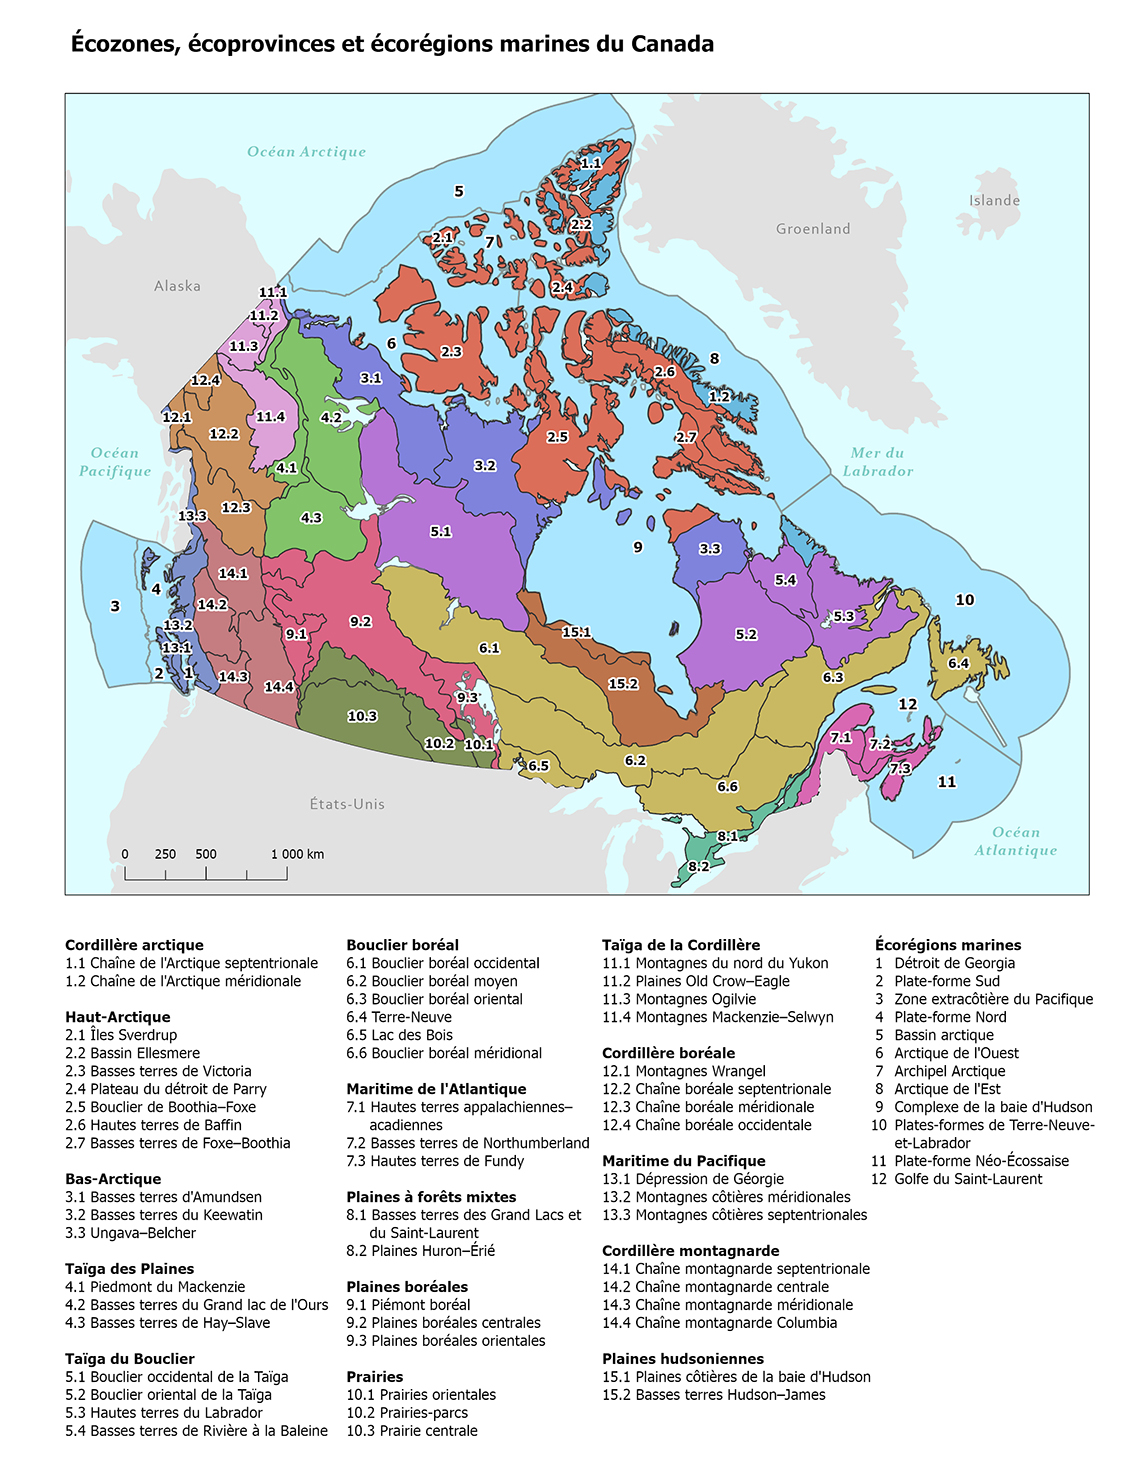 Carte 1.1 Écozones, écoprovinces et écorégions marines du Canada